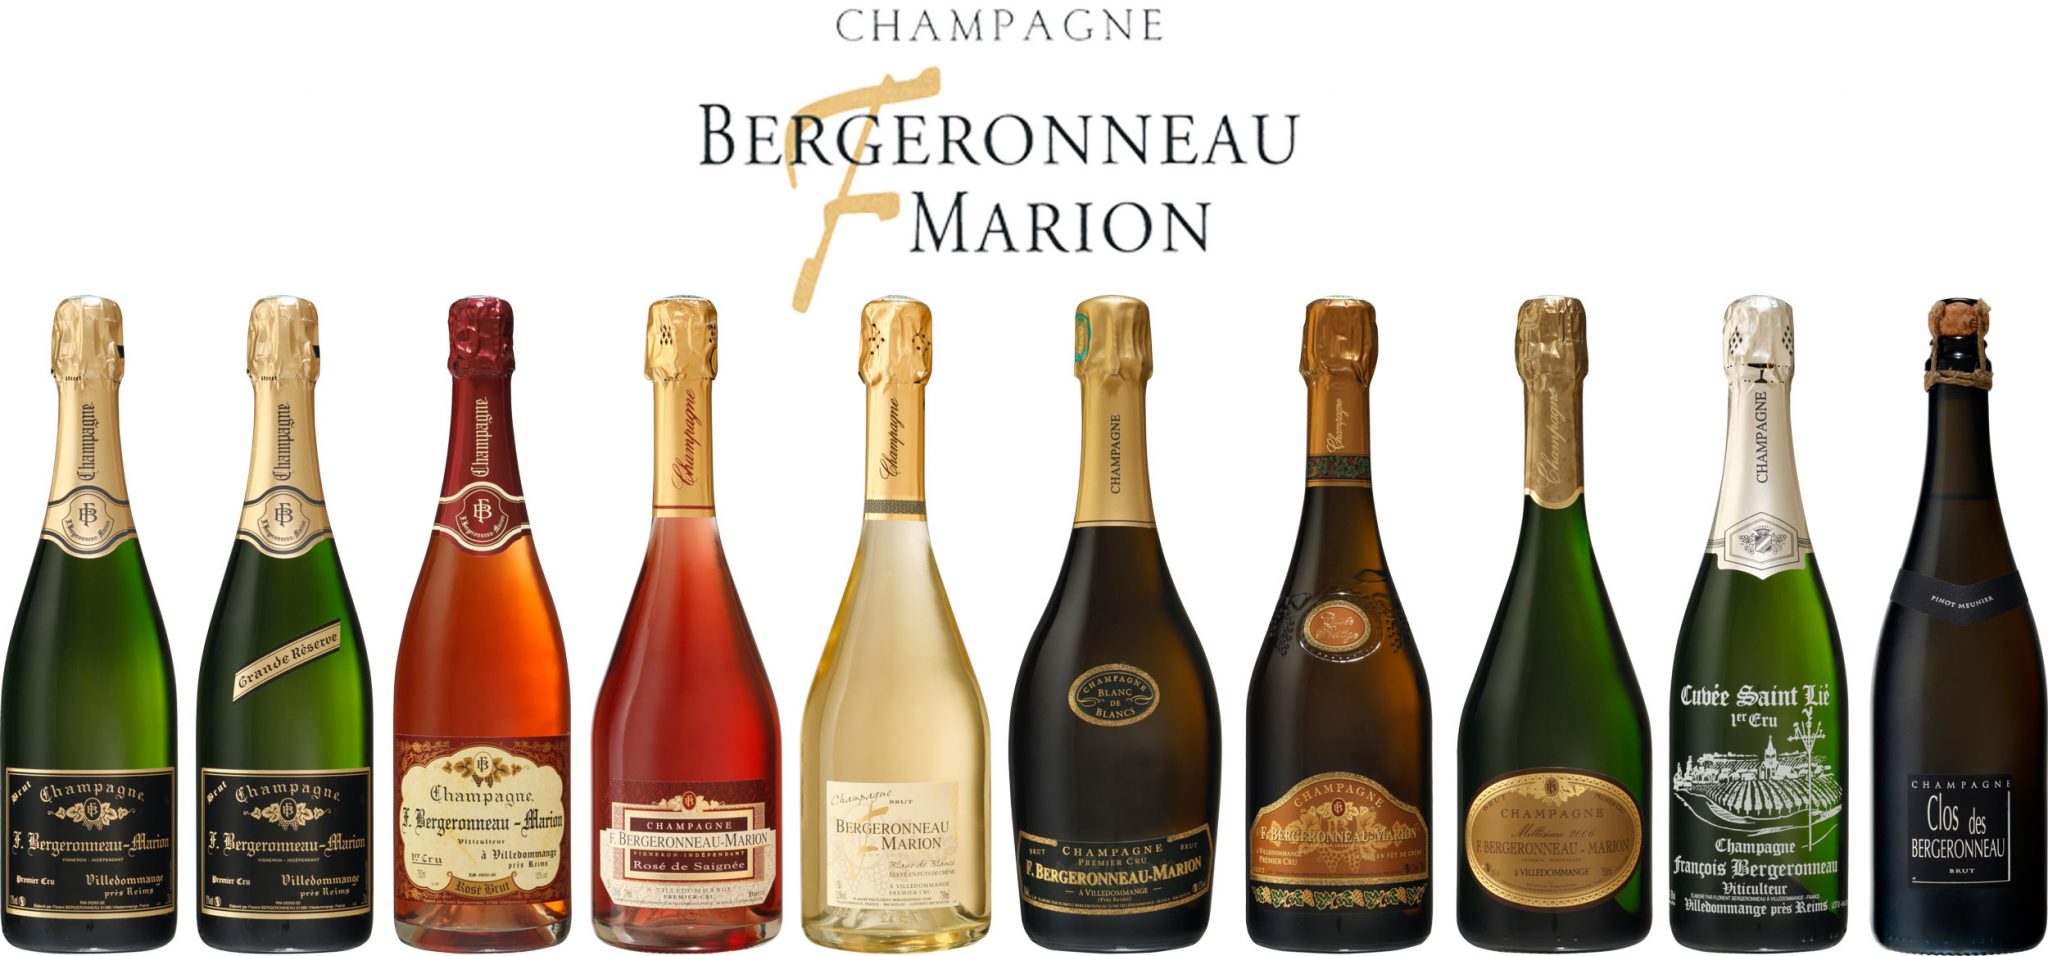 Champagne F. Bergeronneau-Marion